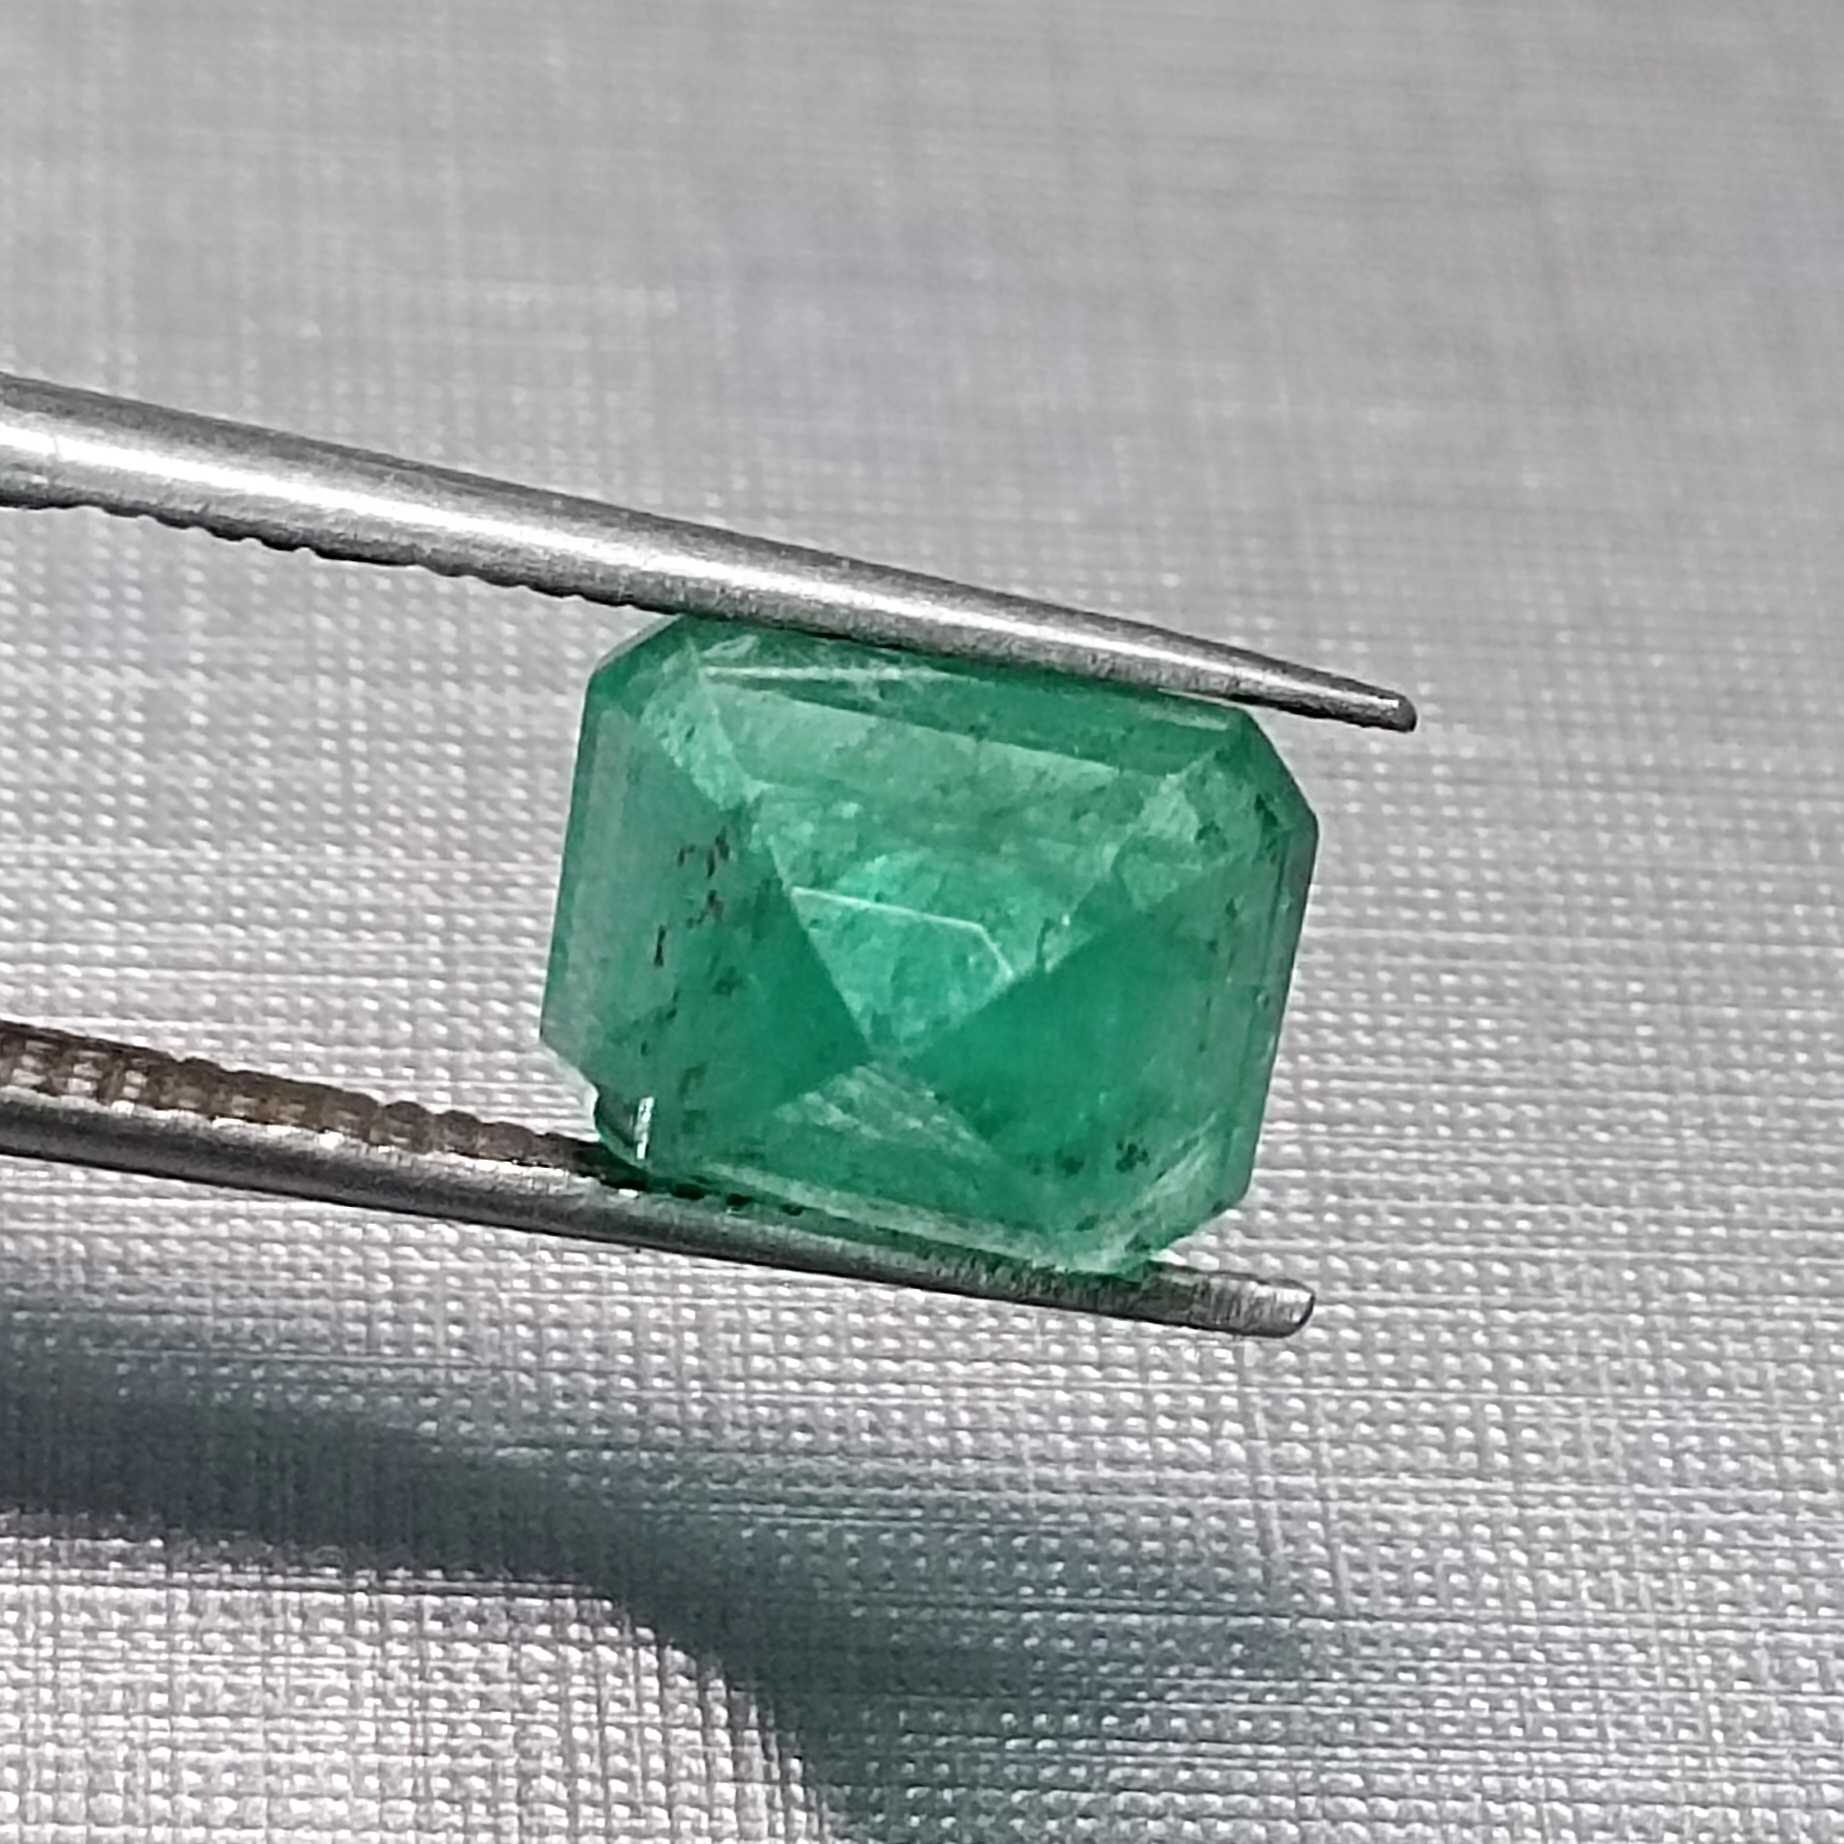 3.28ct medium vivid green emerald cut emerald